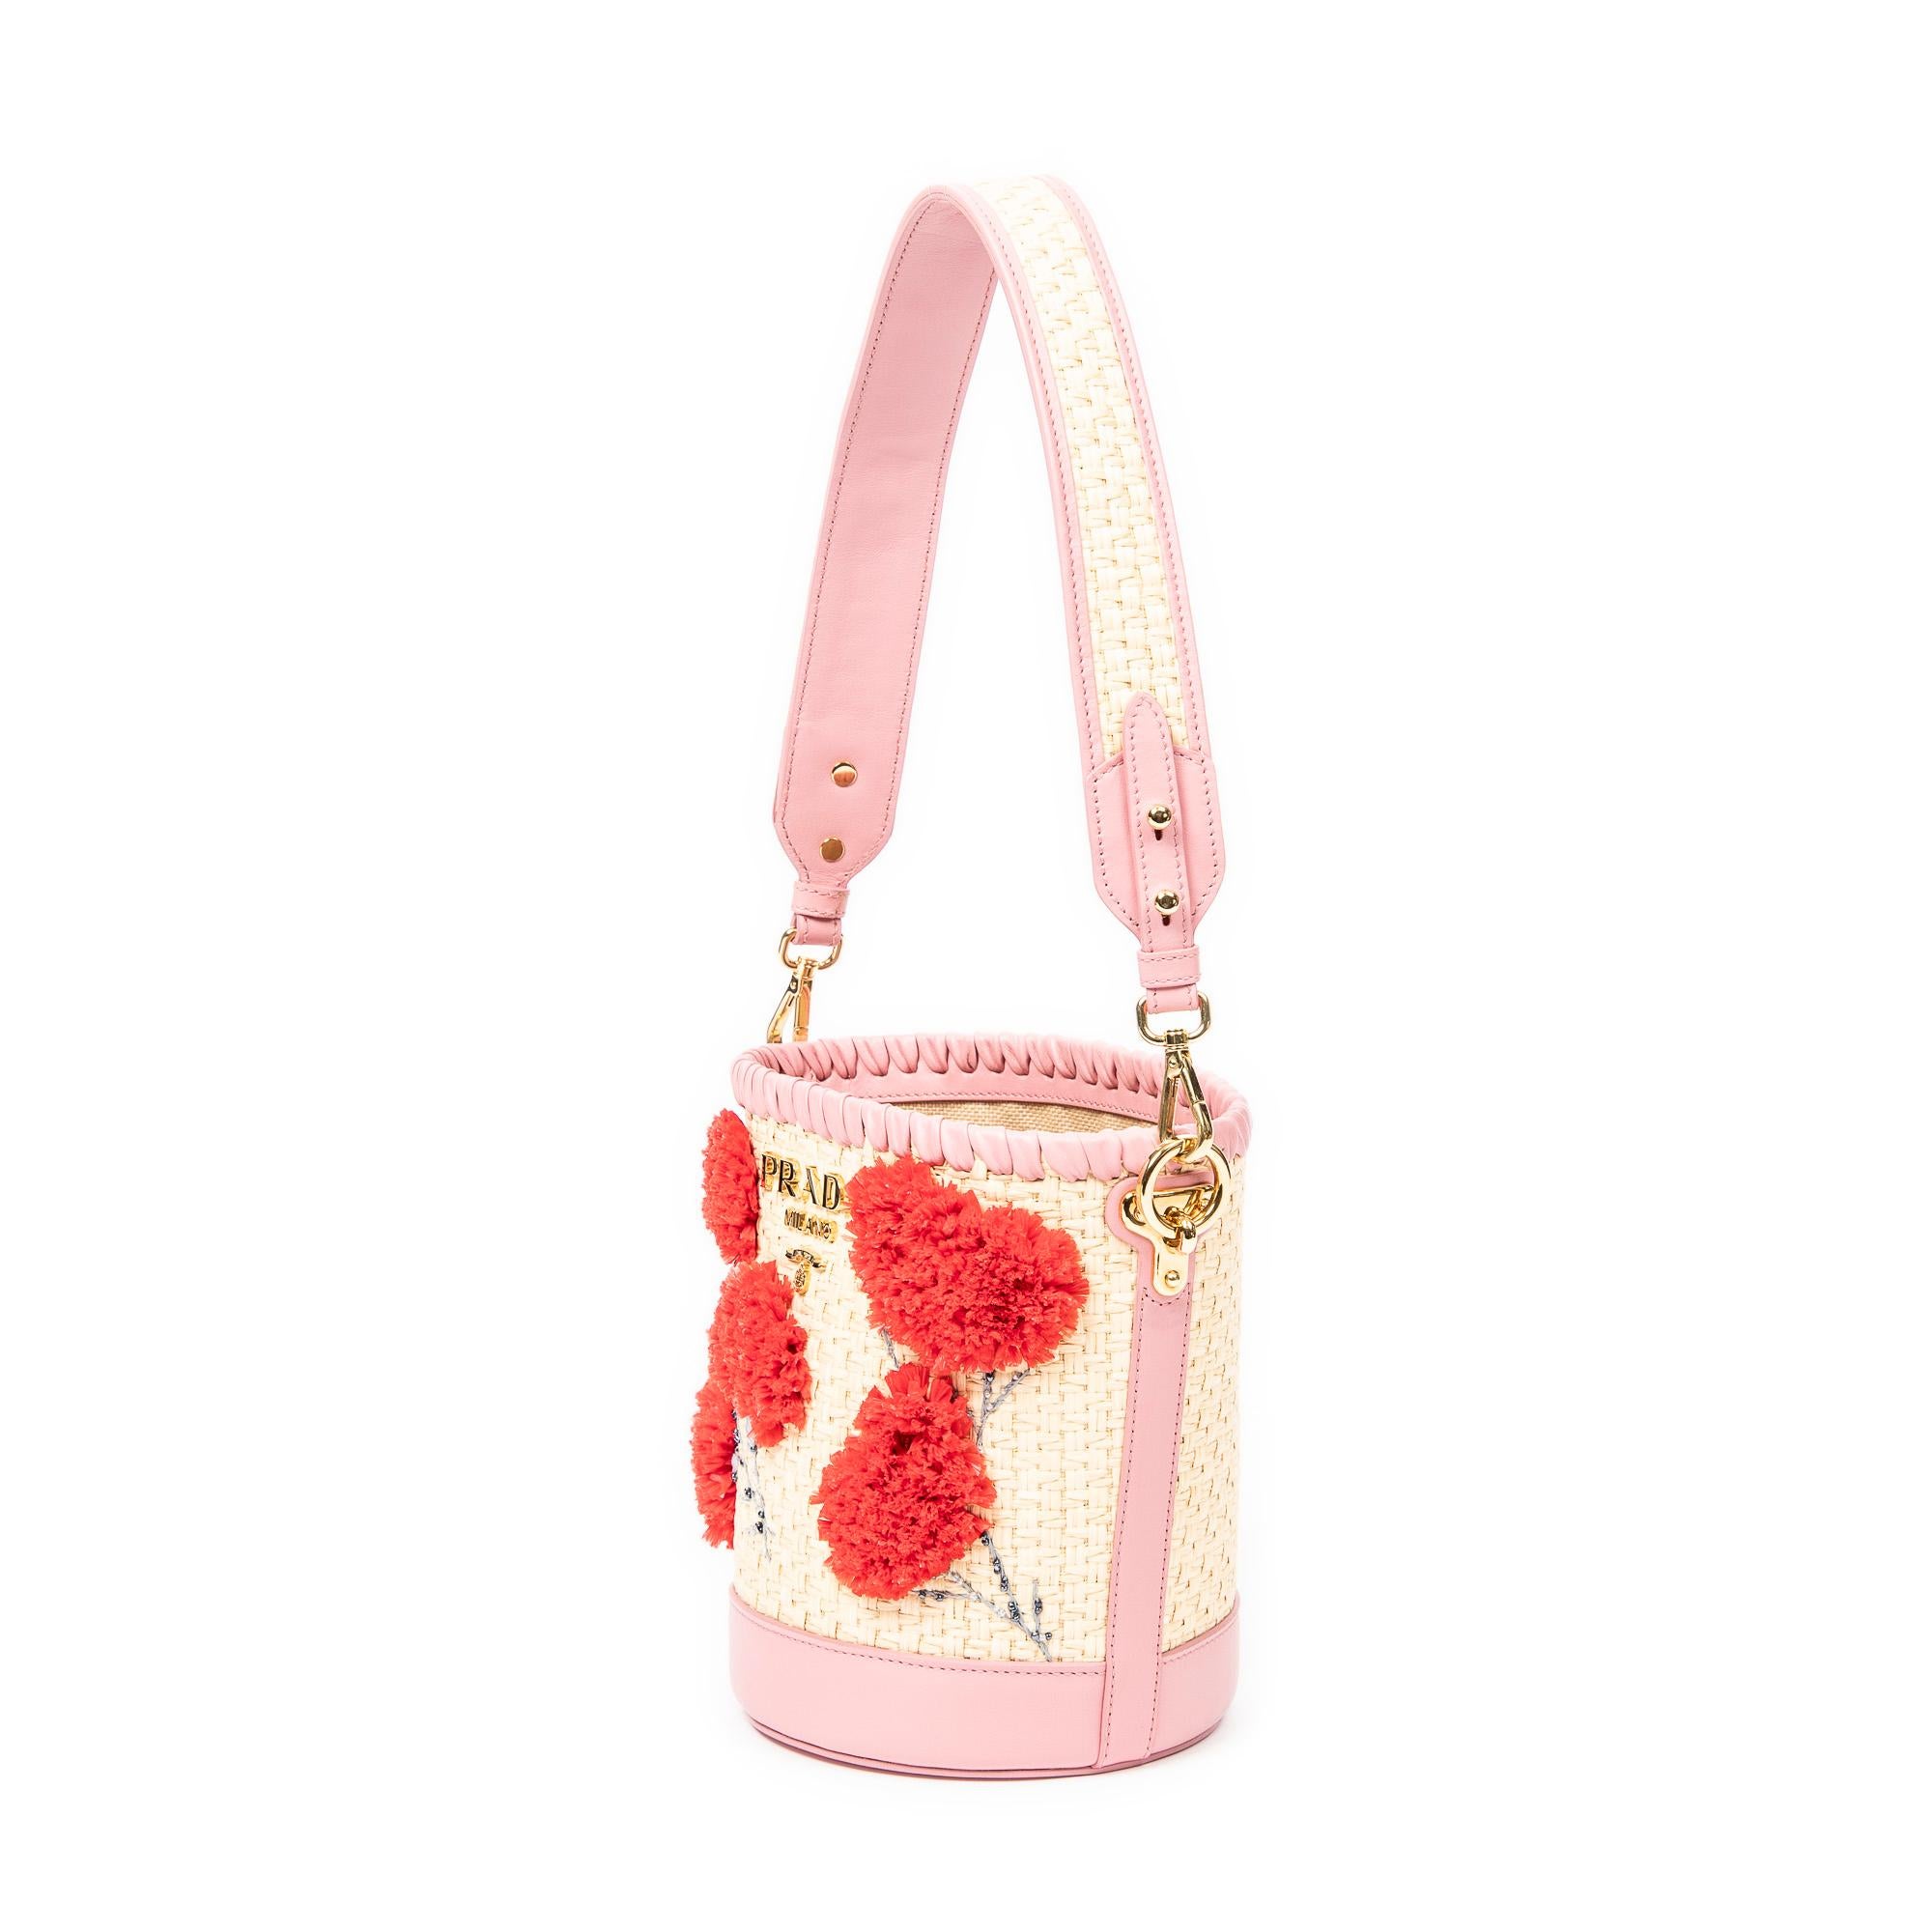 Die Pink Embroidered Raffia Bucket Bag von Prada ist mit ihren goldenen Beschlägen und der offenen Oberseite, die zu einem geräumigen Innenraum aus gewebtem Canvas mit einem einzigen Reißverschlussfach führt, lässig elegant.

ANGABEN
Länge: 8